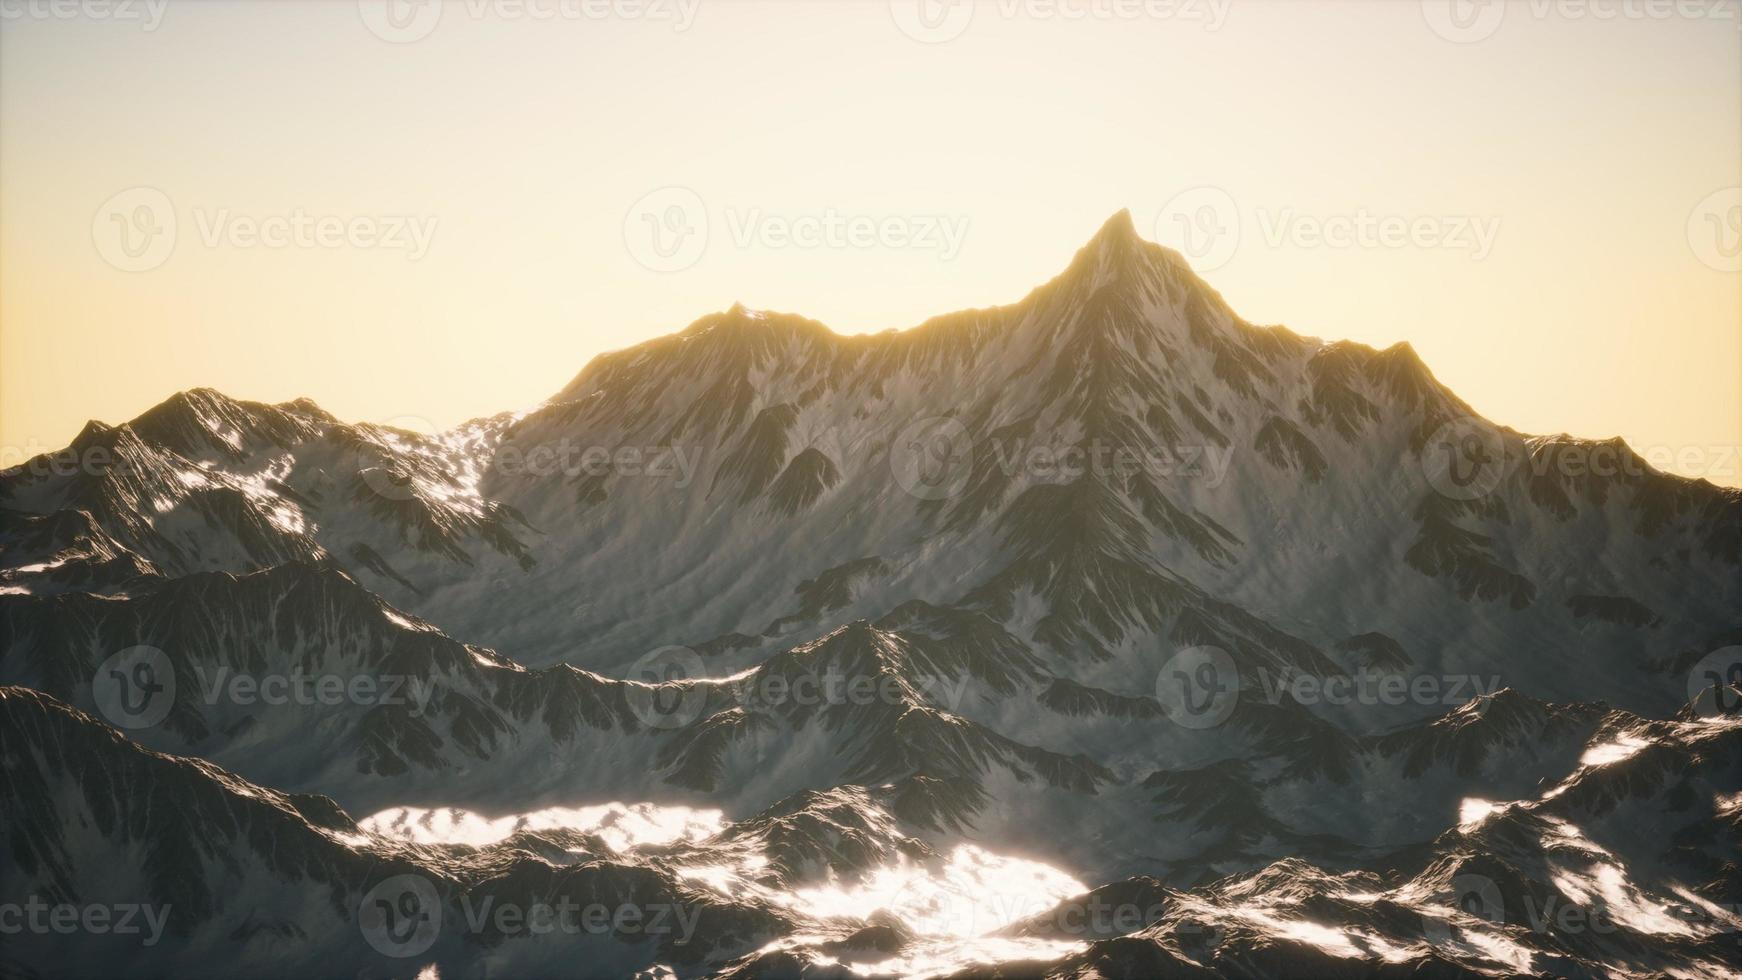 vista aérea de las montañas de los alpes en la nieve foto